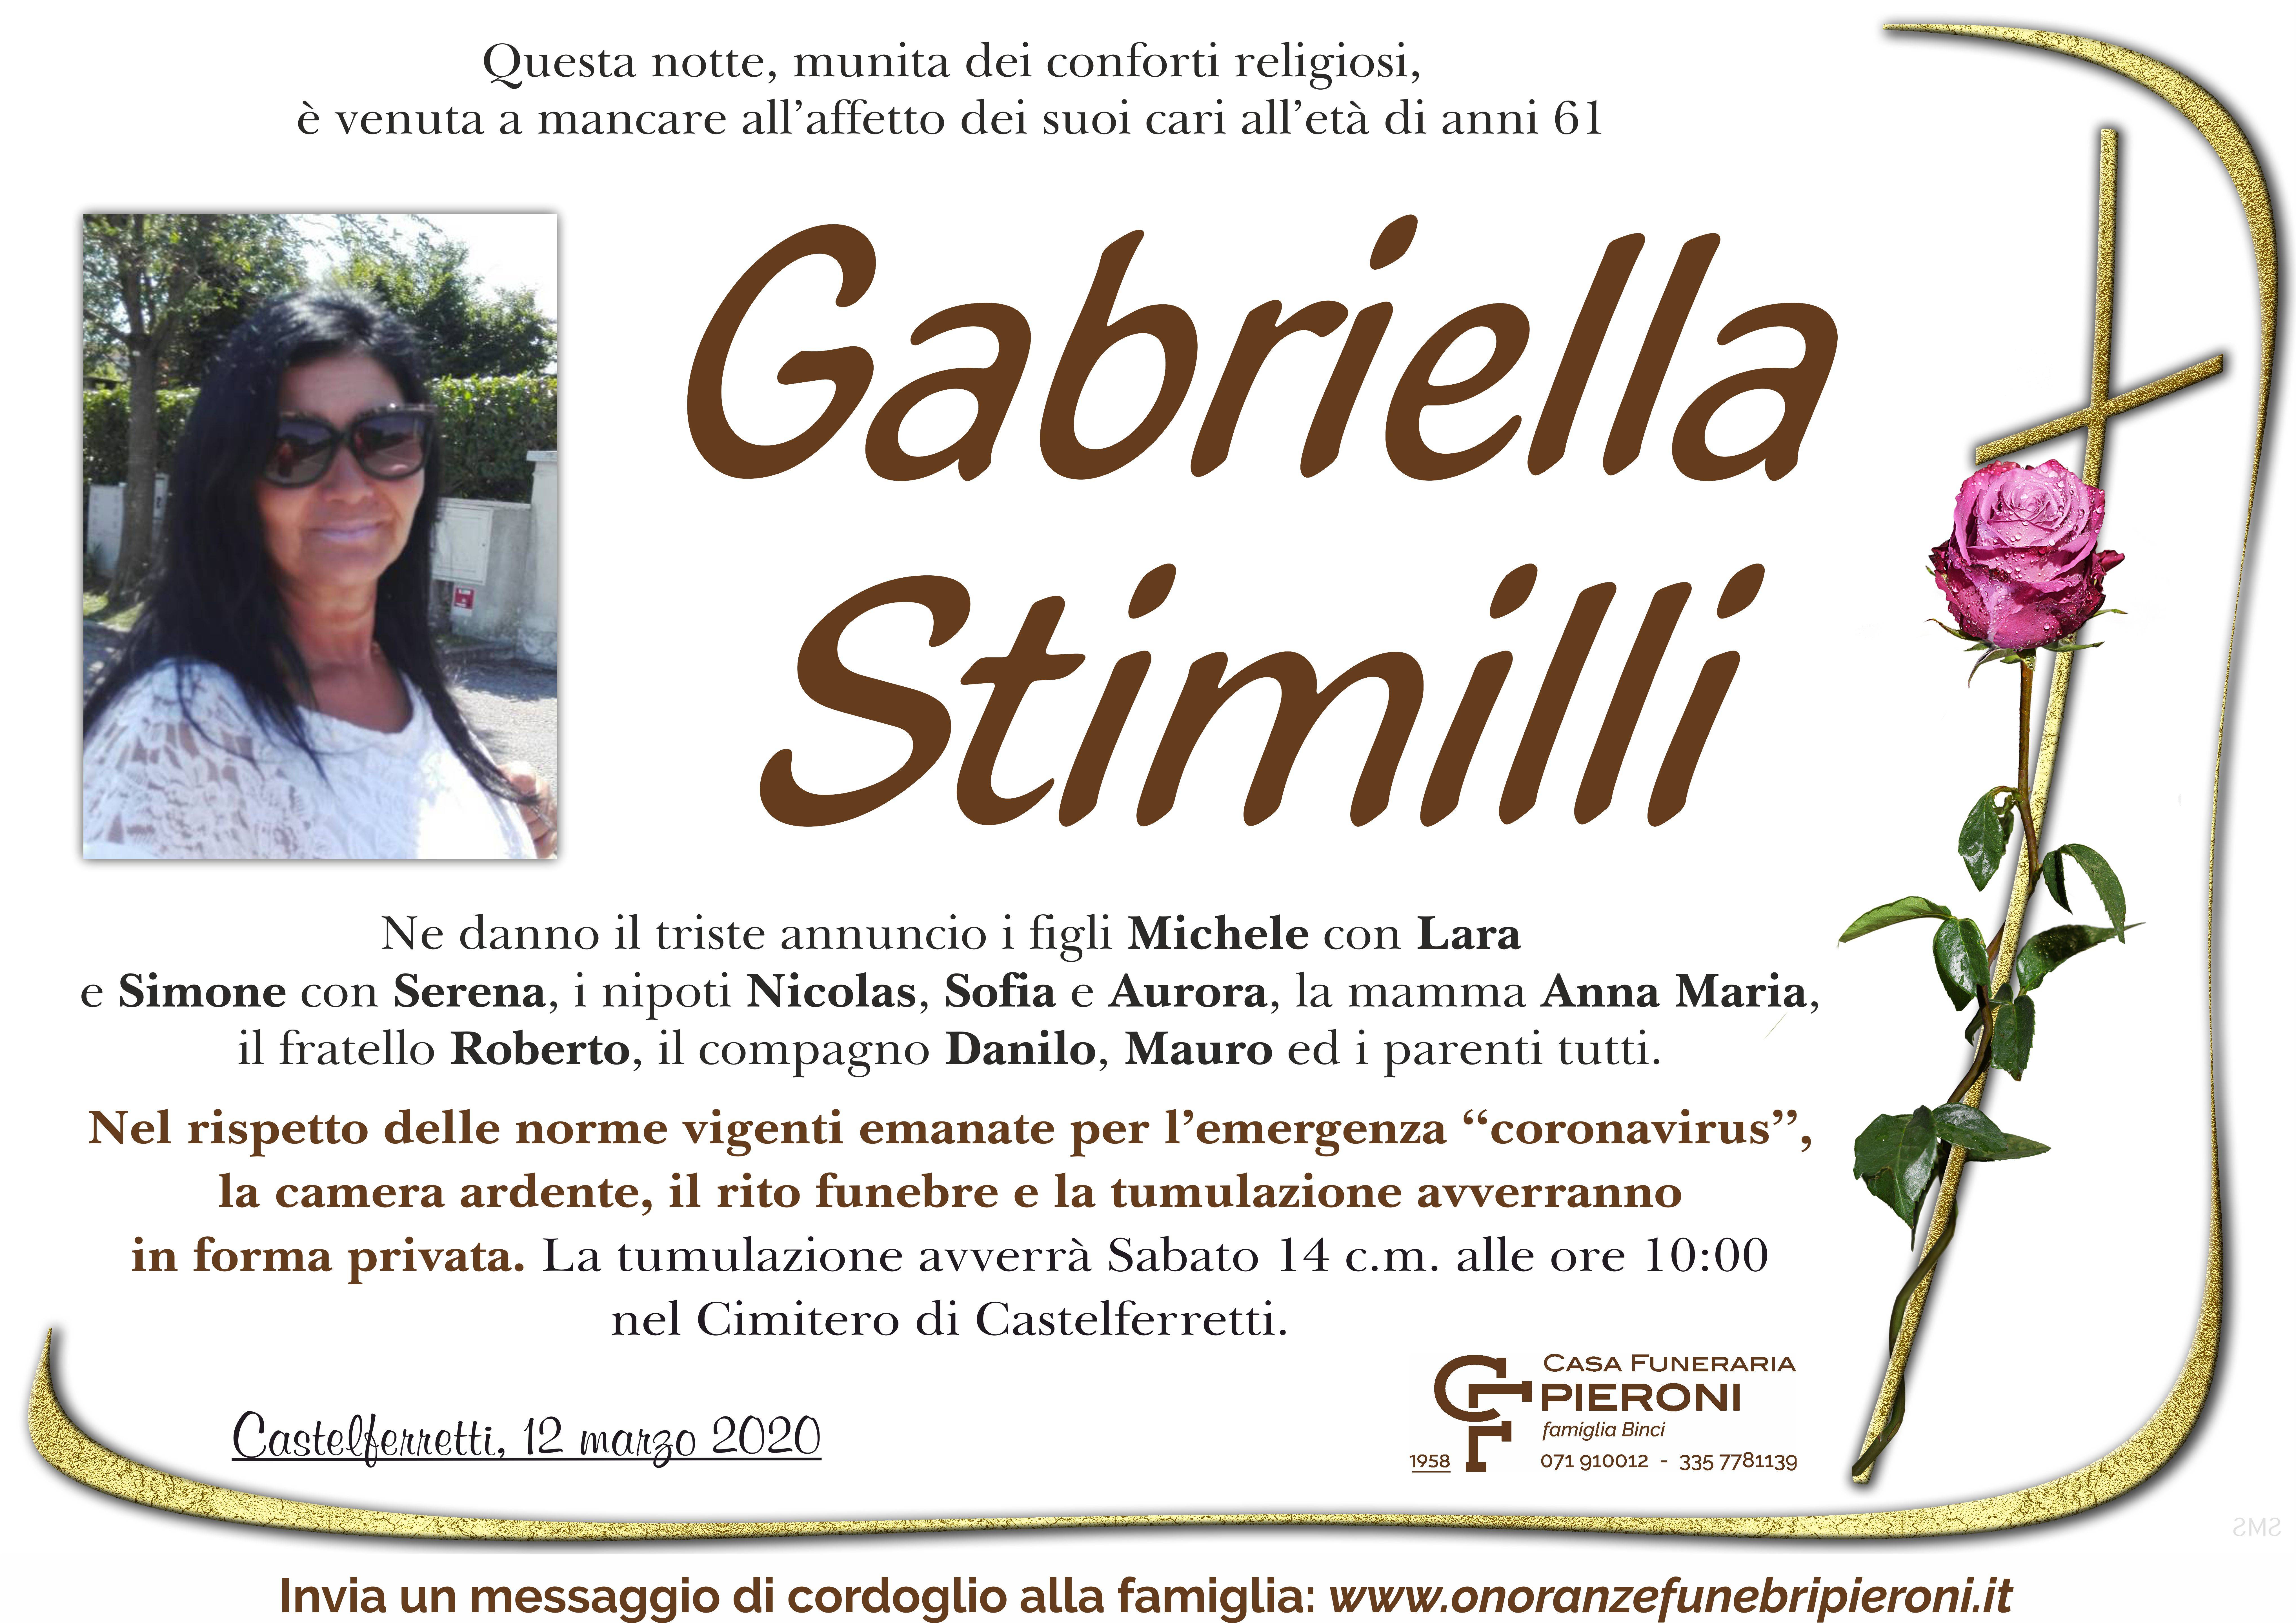 Gabriella Stimilli